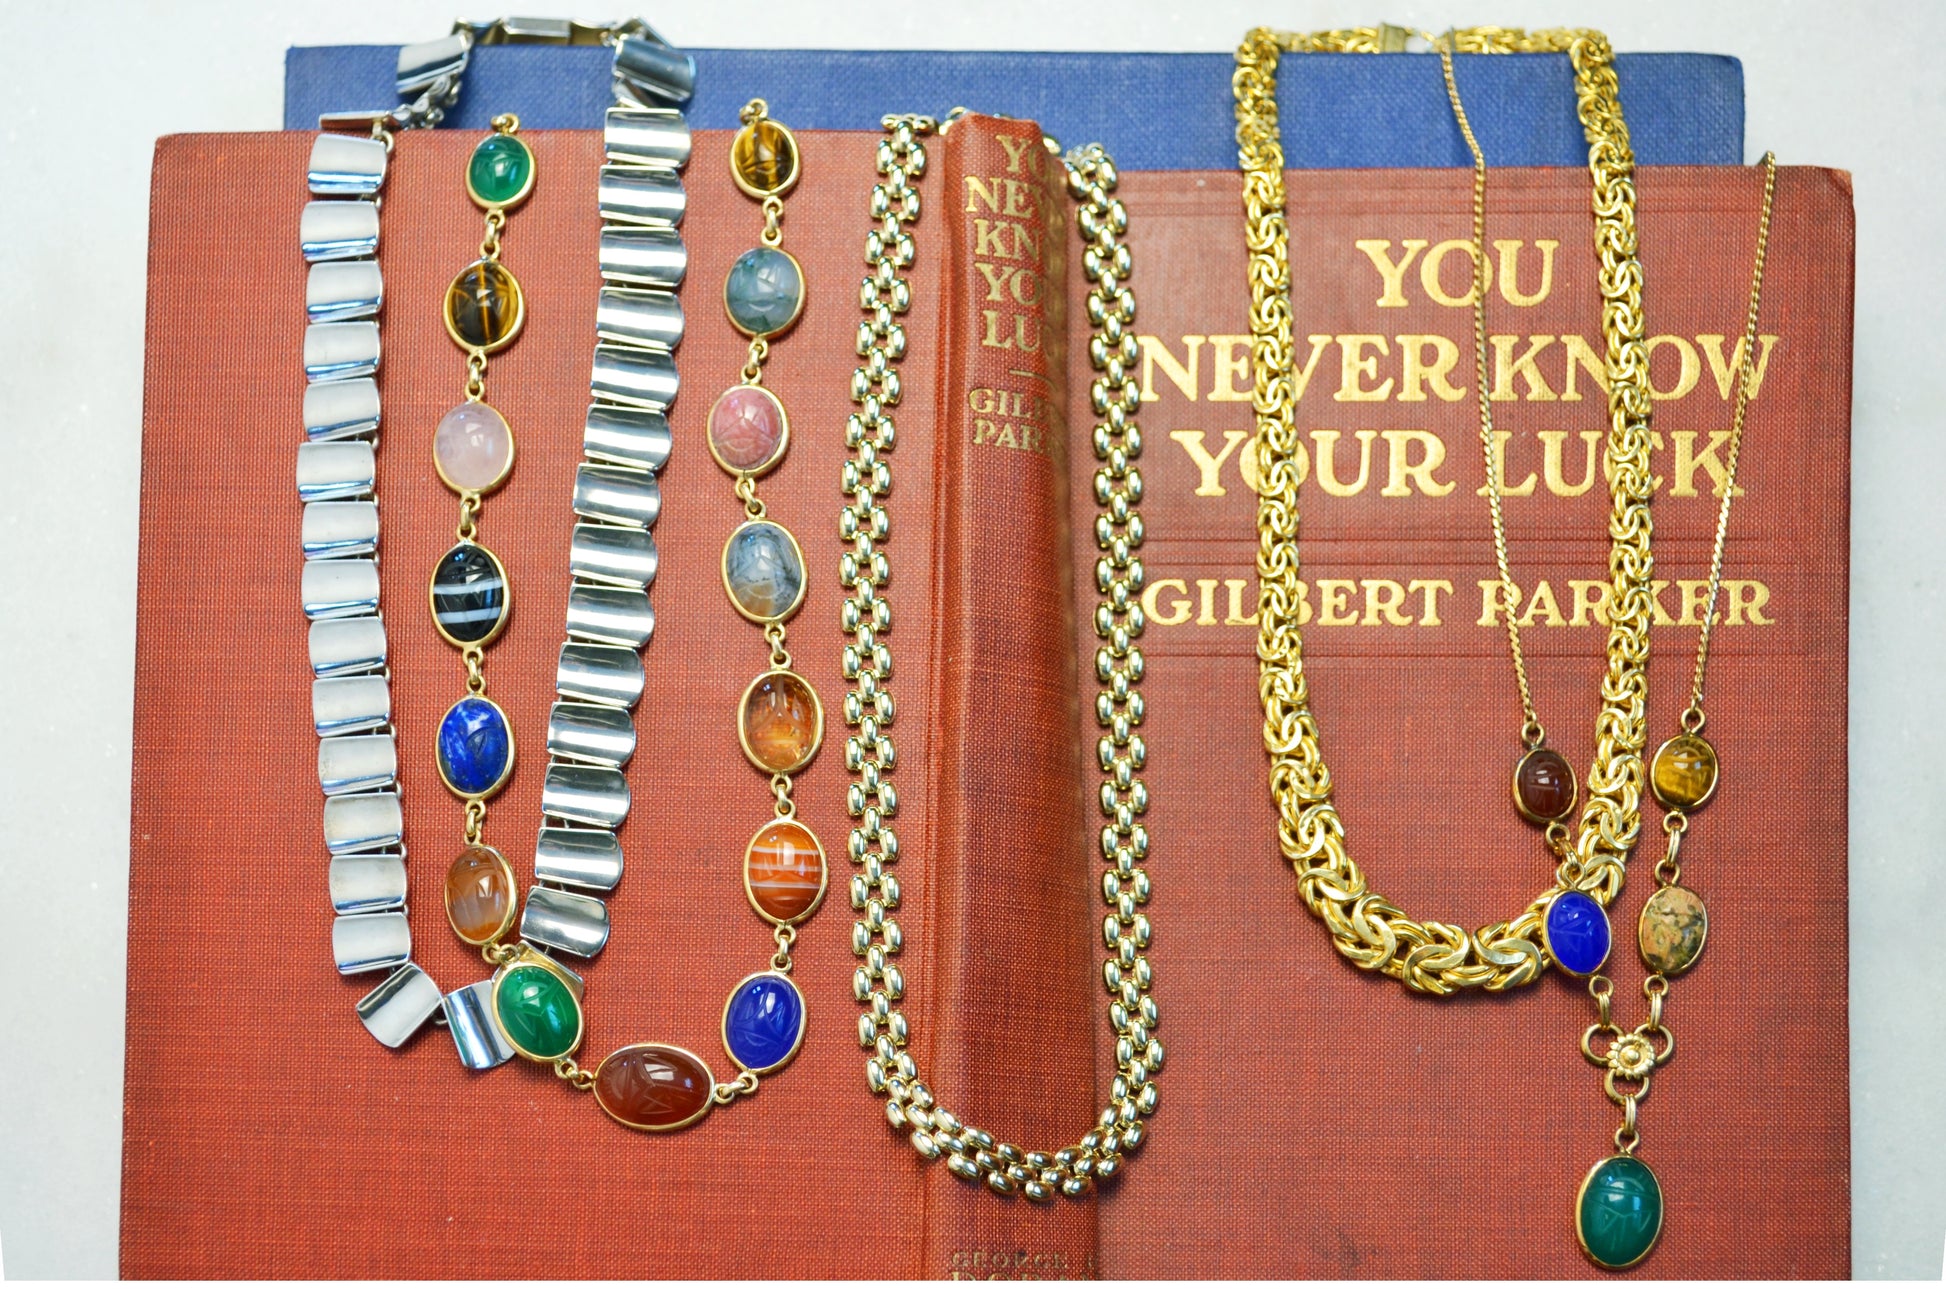 Vintage 14k Gold Graduated Byzantine Link Necklace